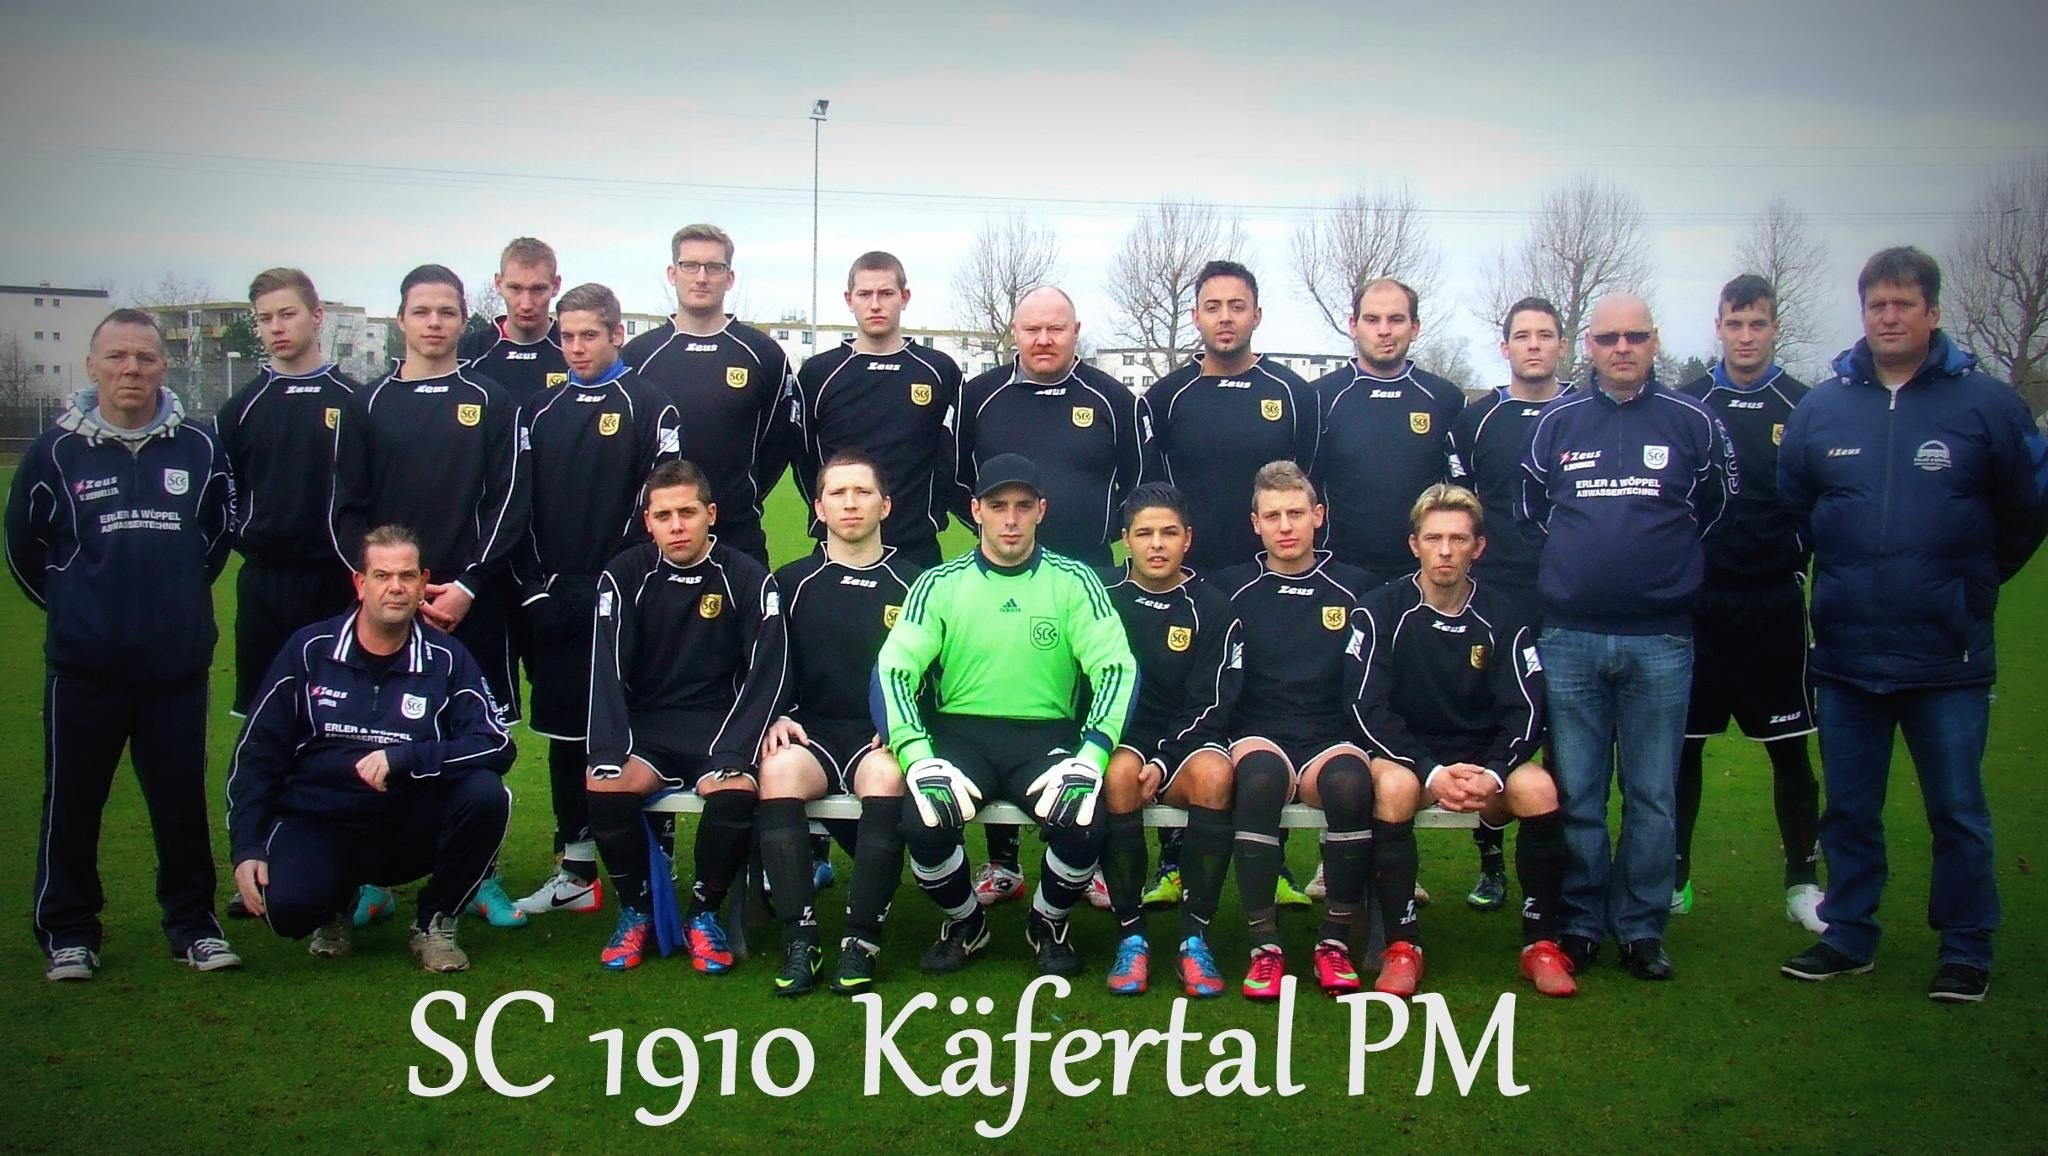 Mannschaftsfoto/Teamfoto von SC 1910 Kfertal PM